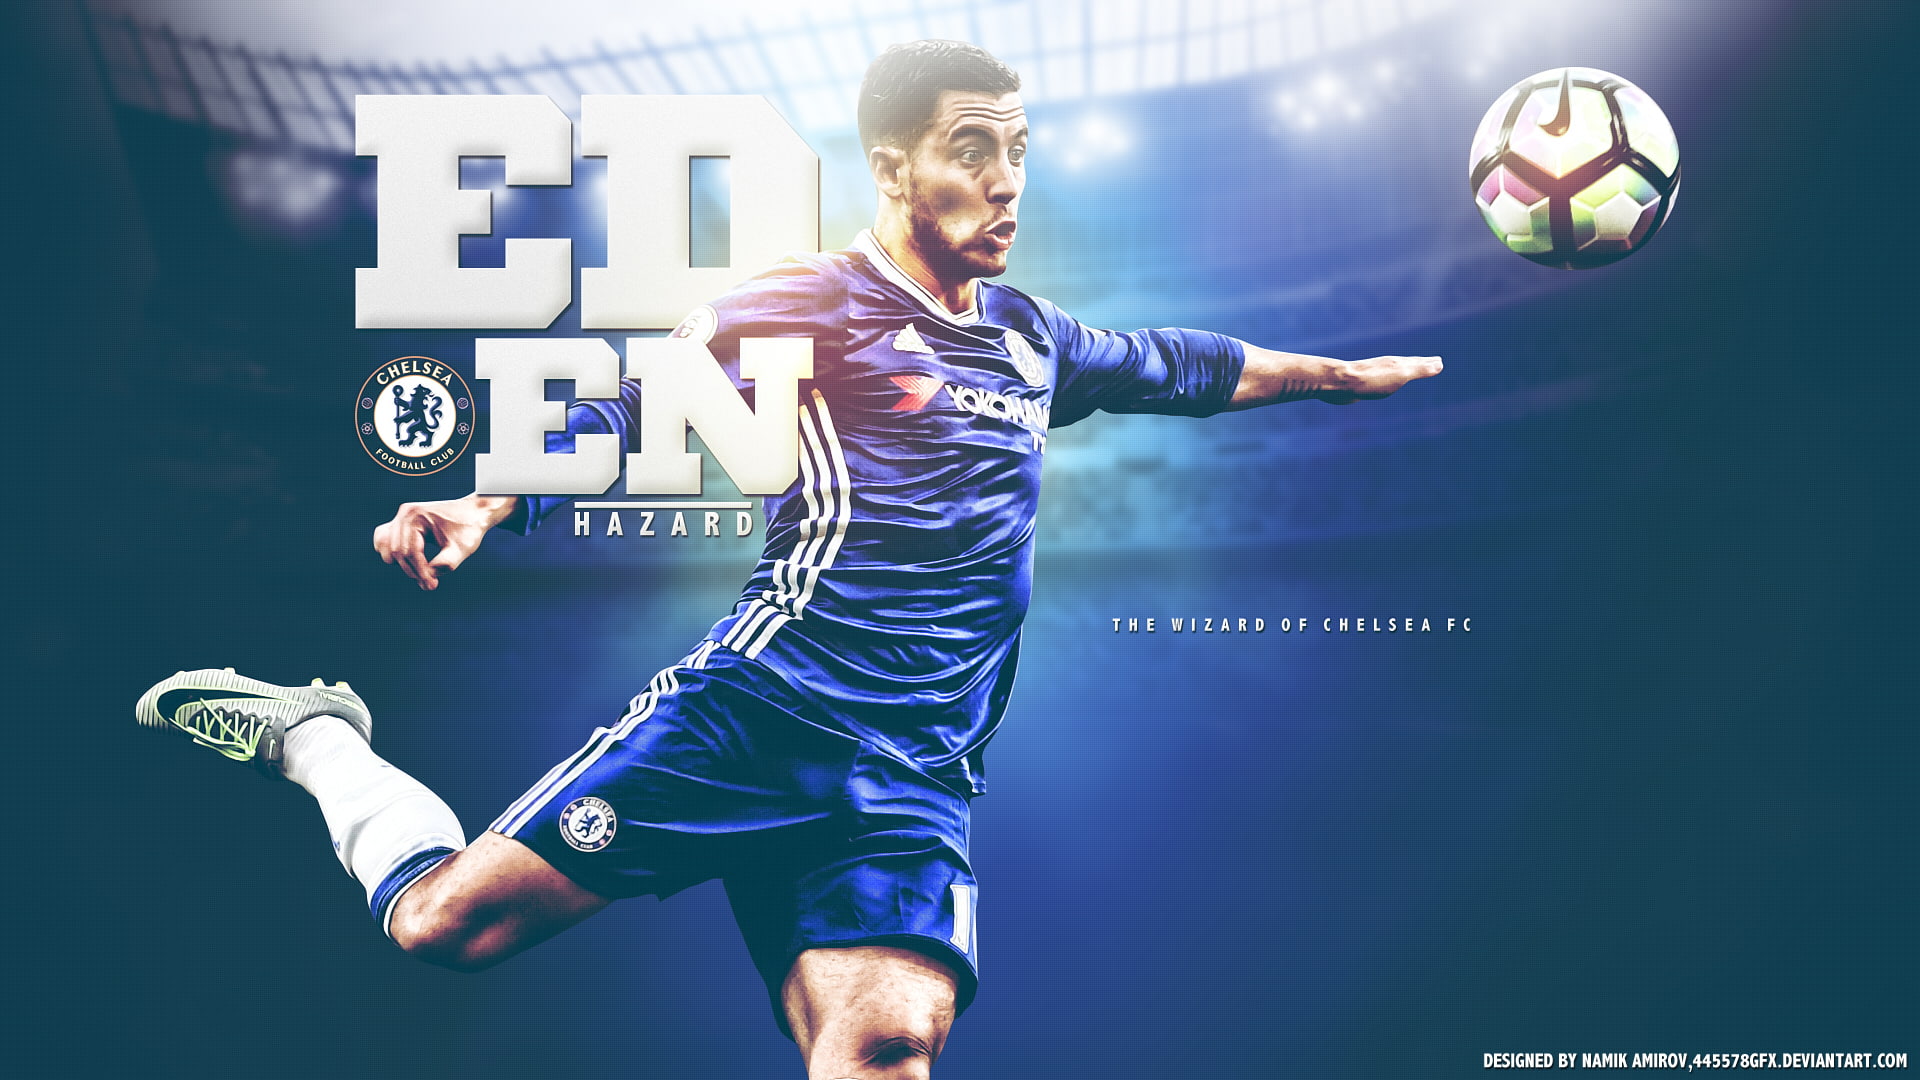 Soccer, Eden Hazard, Belgian, Chelsea F.C.